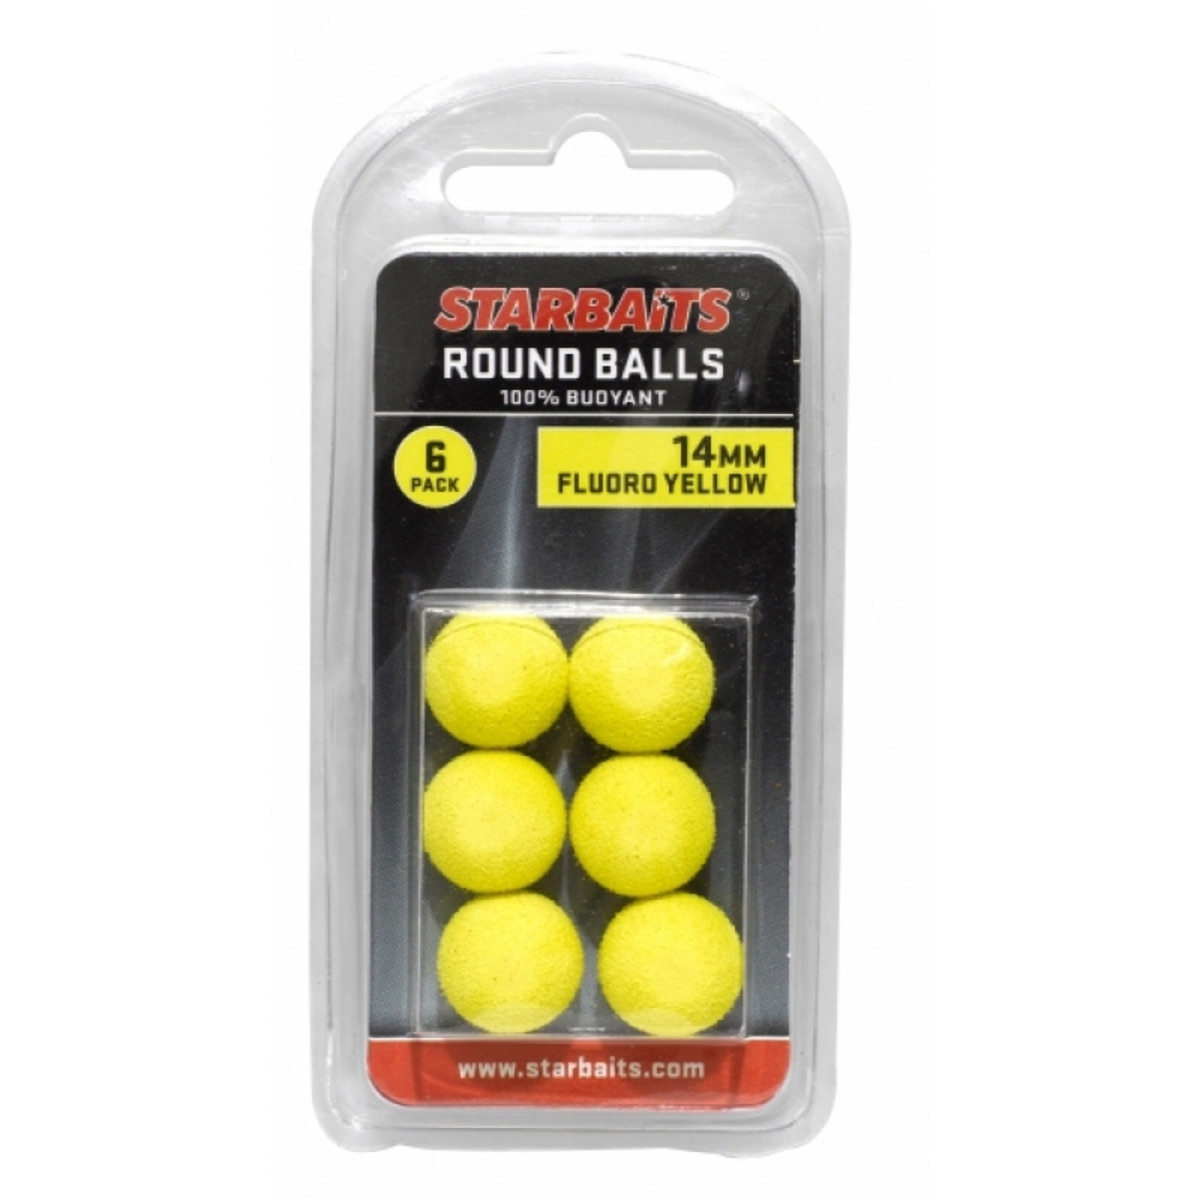 Starbaits Round Balls 14mm - Yellow